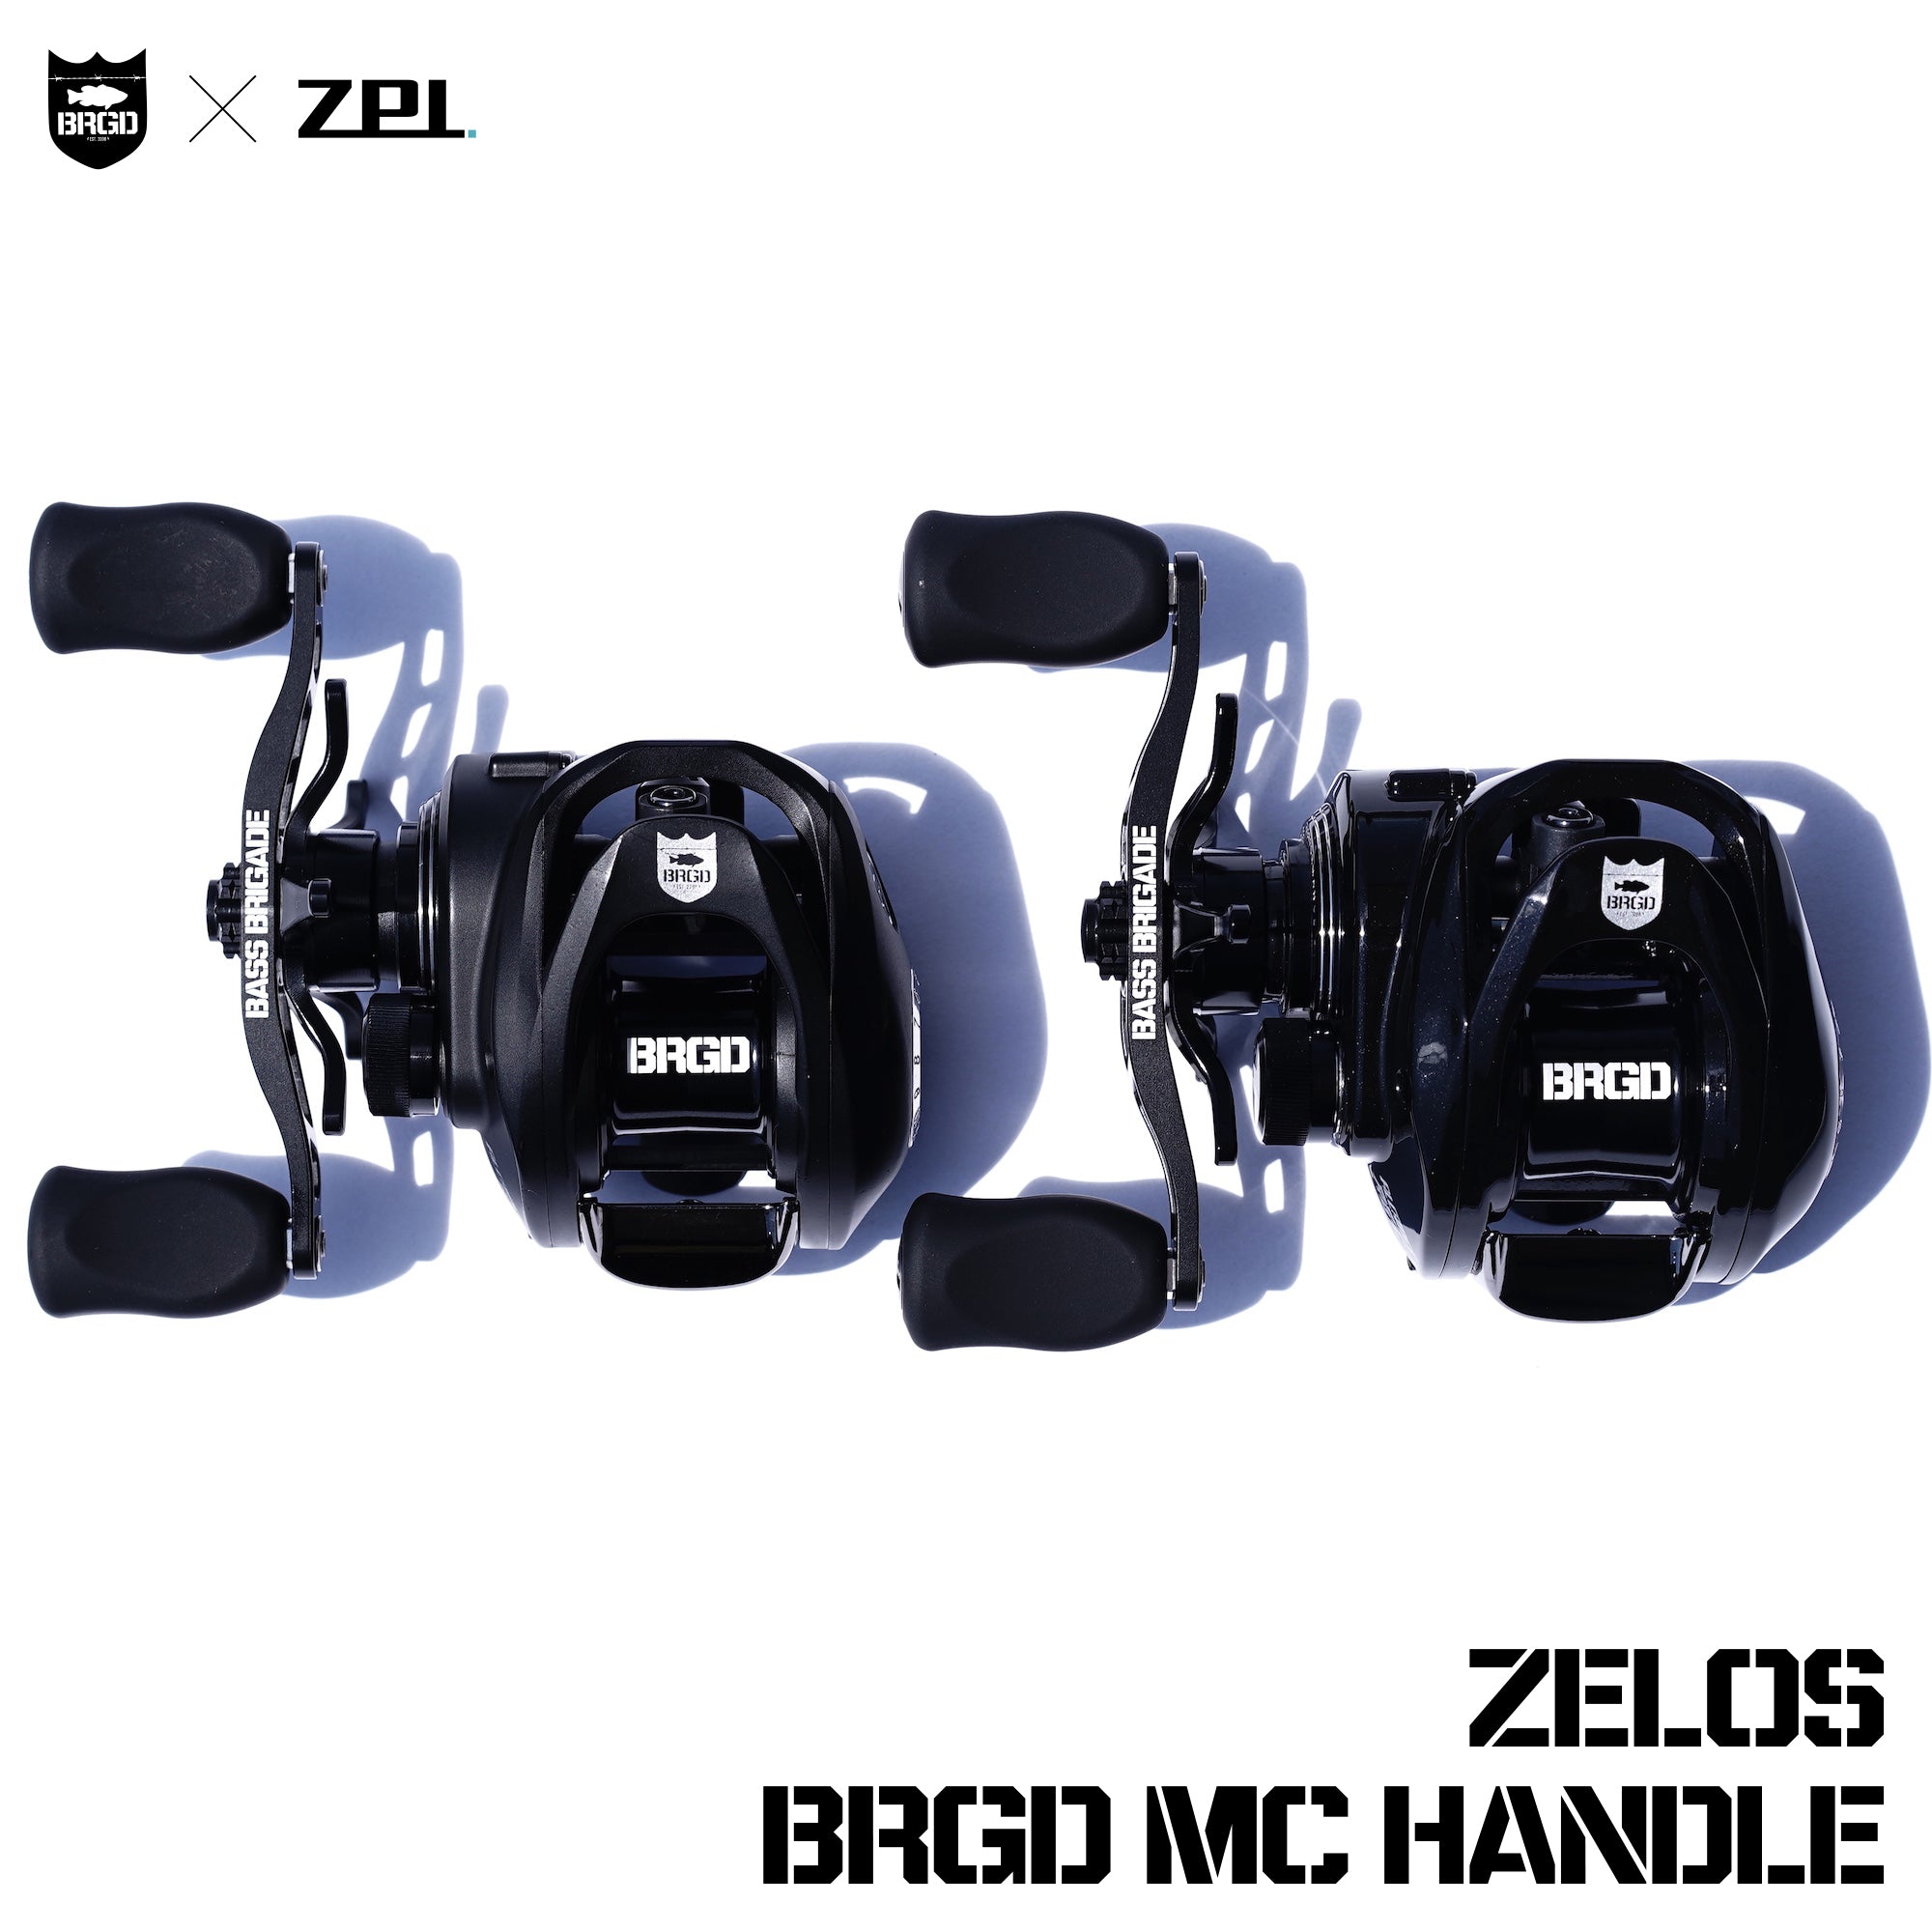 ZPI × BASS BRIGADE ZELOS BRGD MC HANDLE